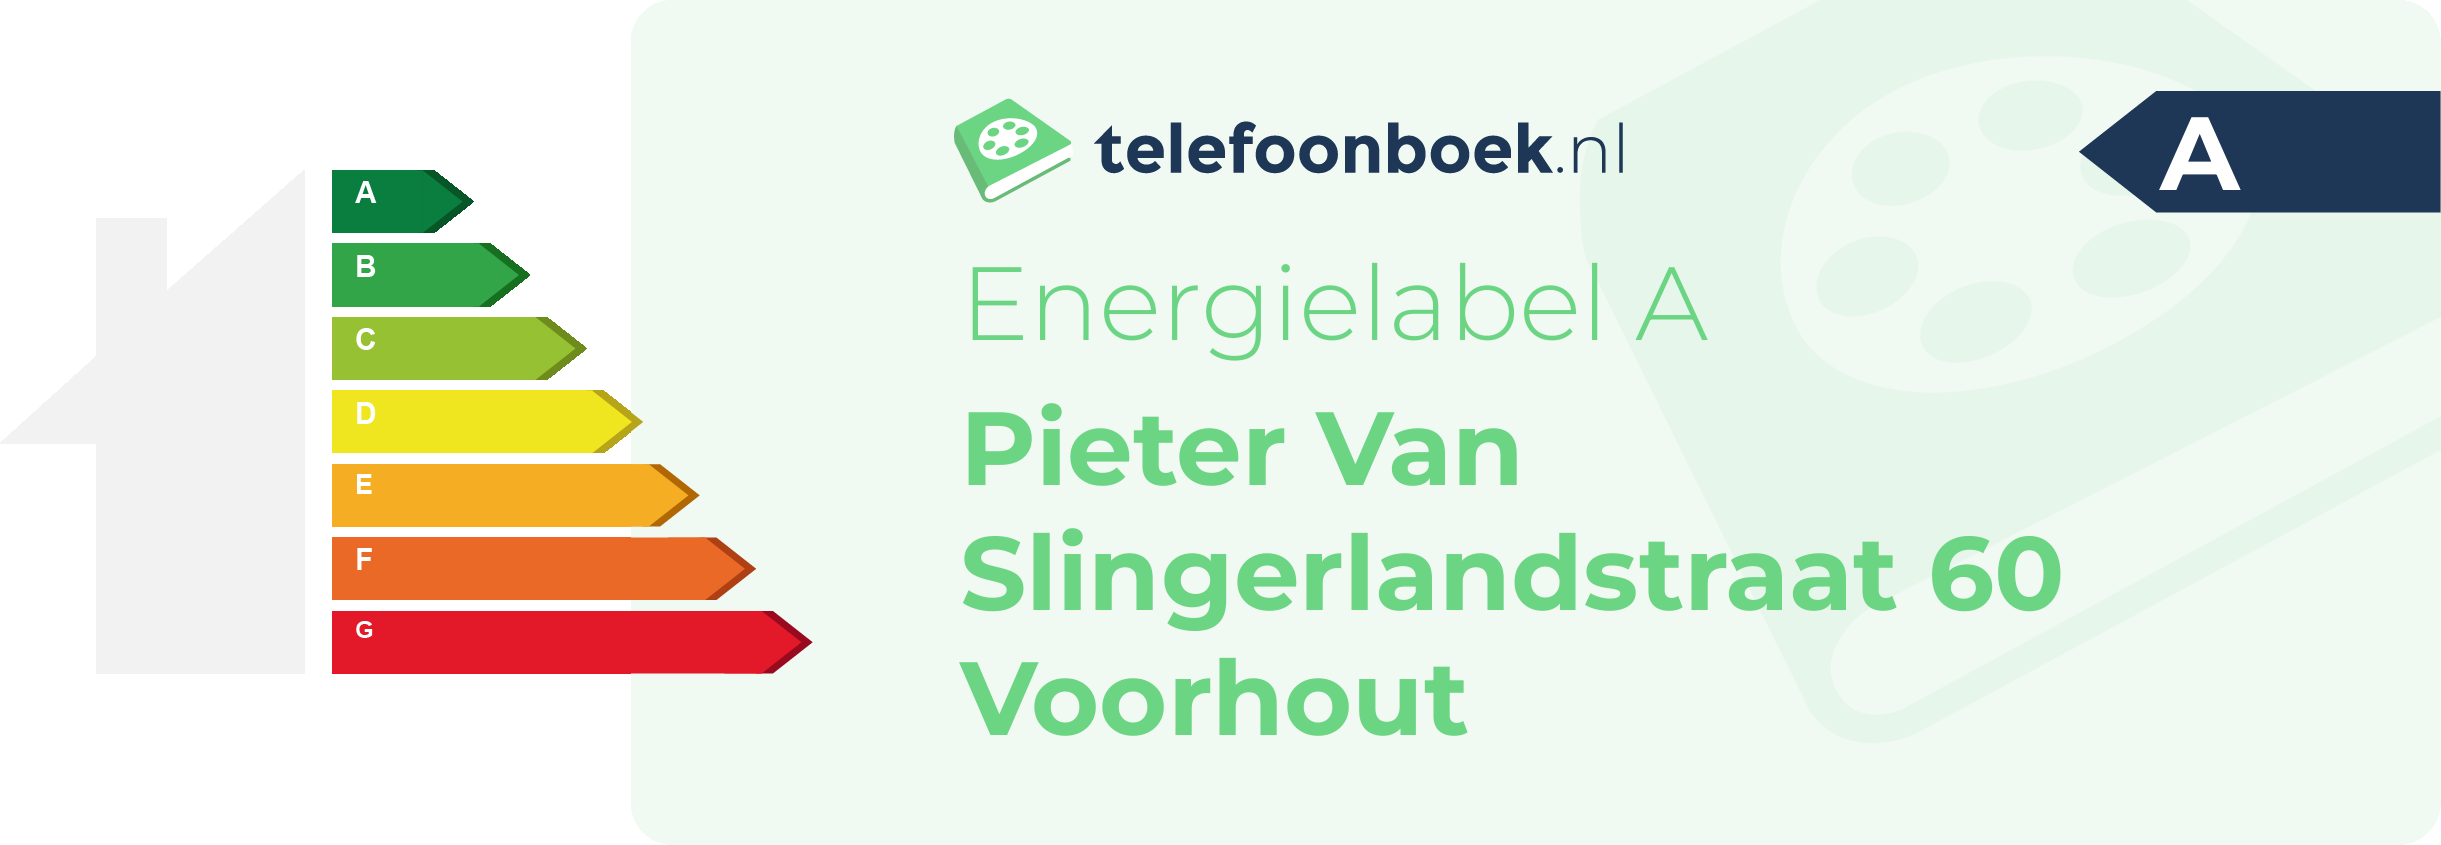 Energielabel Pieter Van Slingerlandstraat 60 Voorhout